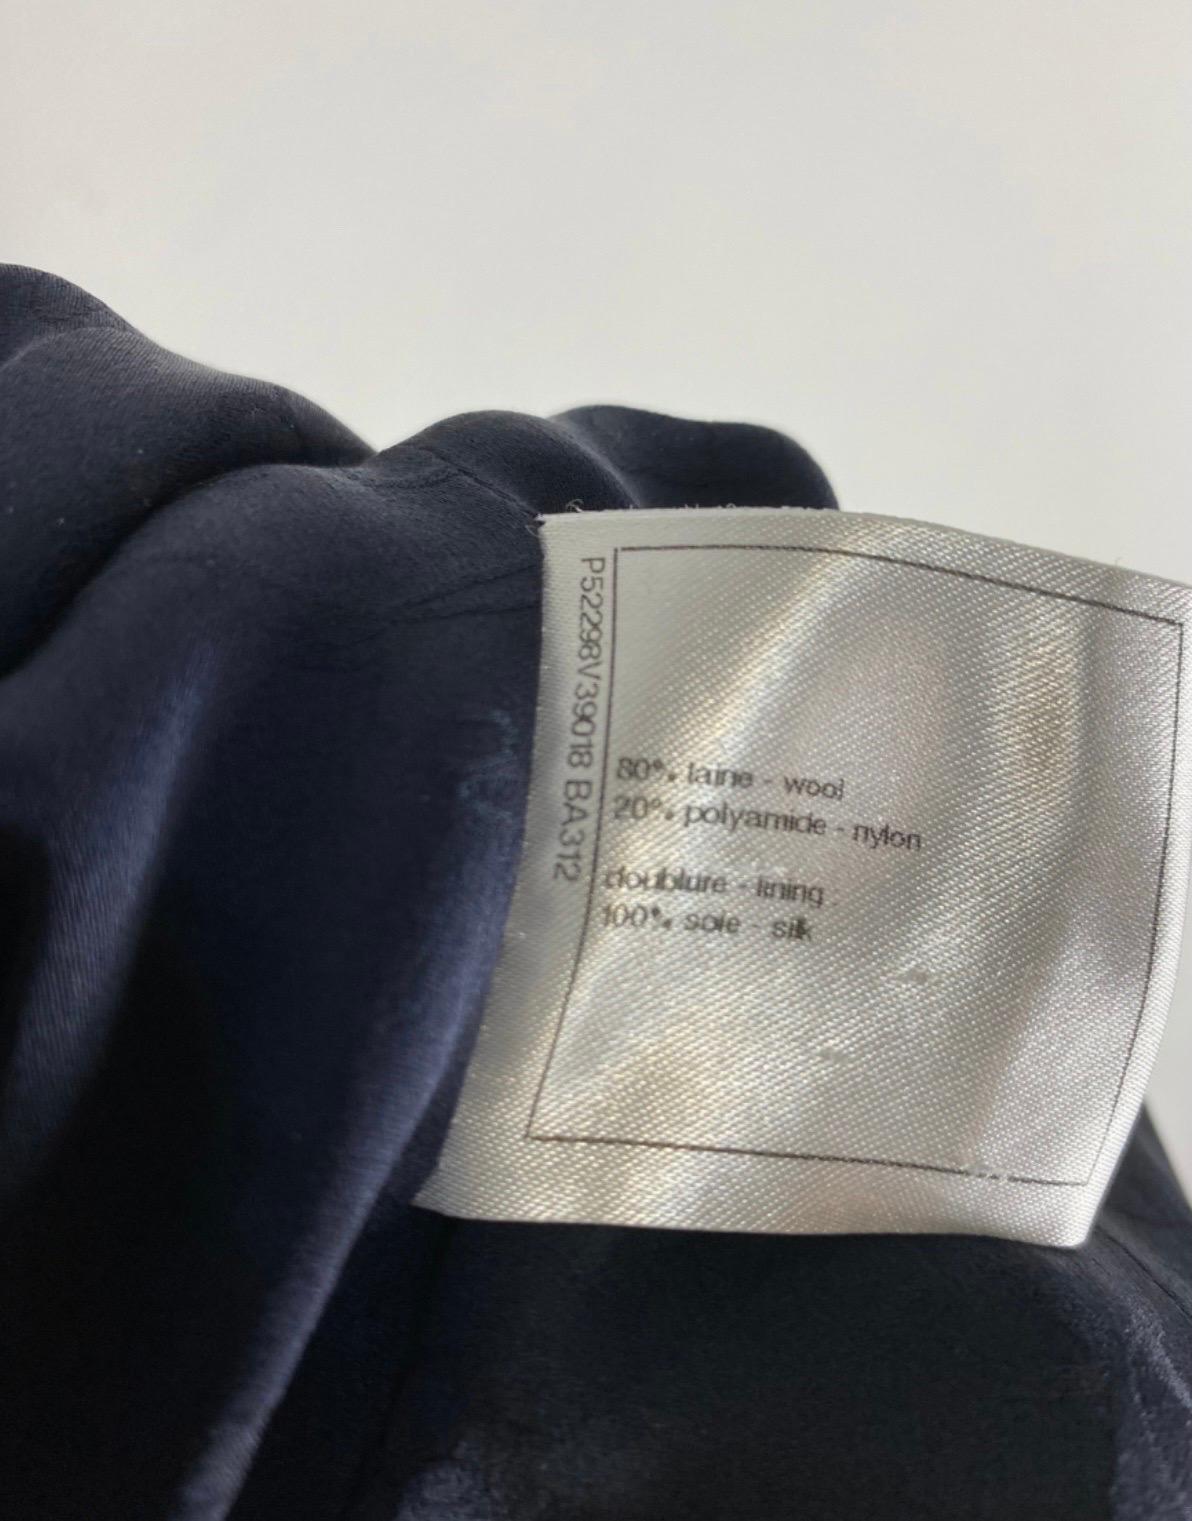 Veste Chanel taille 34 française donc 38Italienne, en laine bleue travaillée comme une boucle, avec une fermeture particulière sur le devant, au dos à la place les 2 fentes latérales sont enrichies de deux boutons, veste longue, le seul défaut est